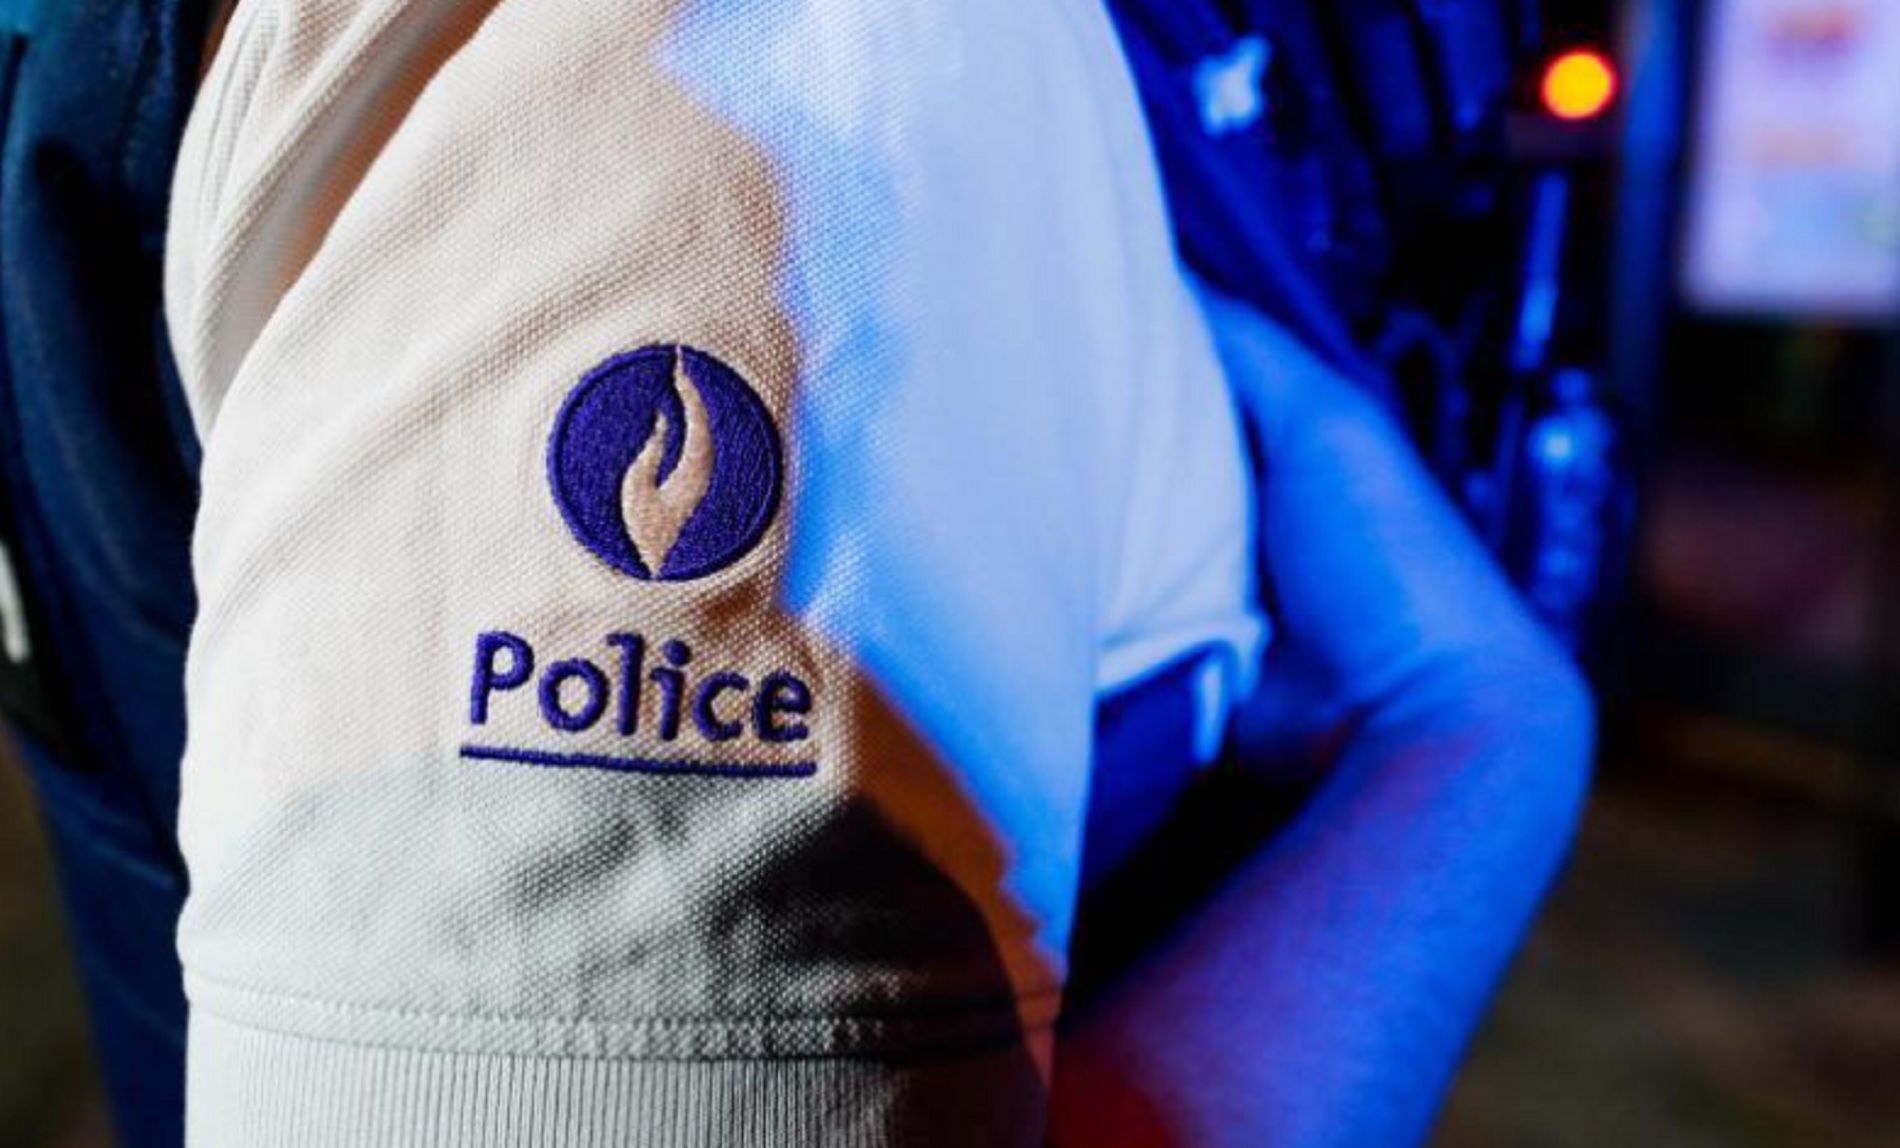 Policia Bélgica / Le Soir